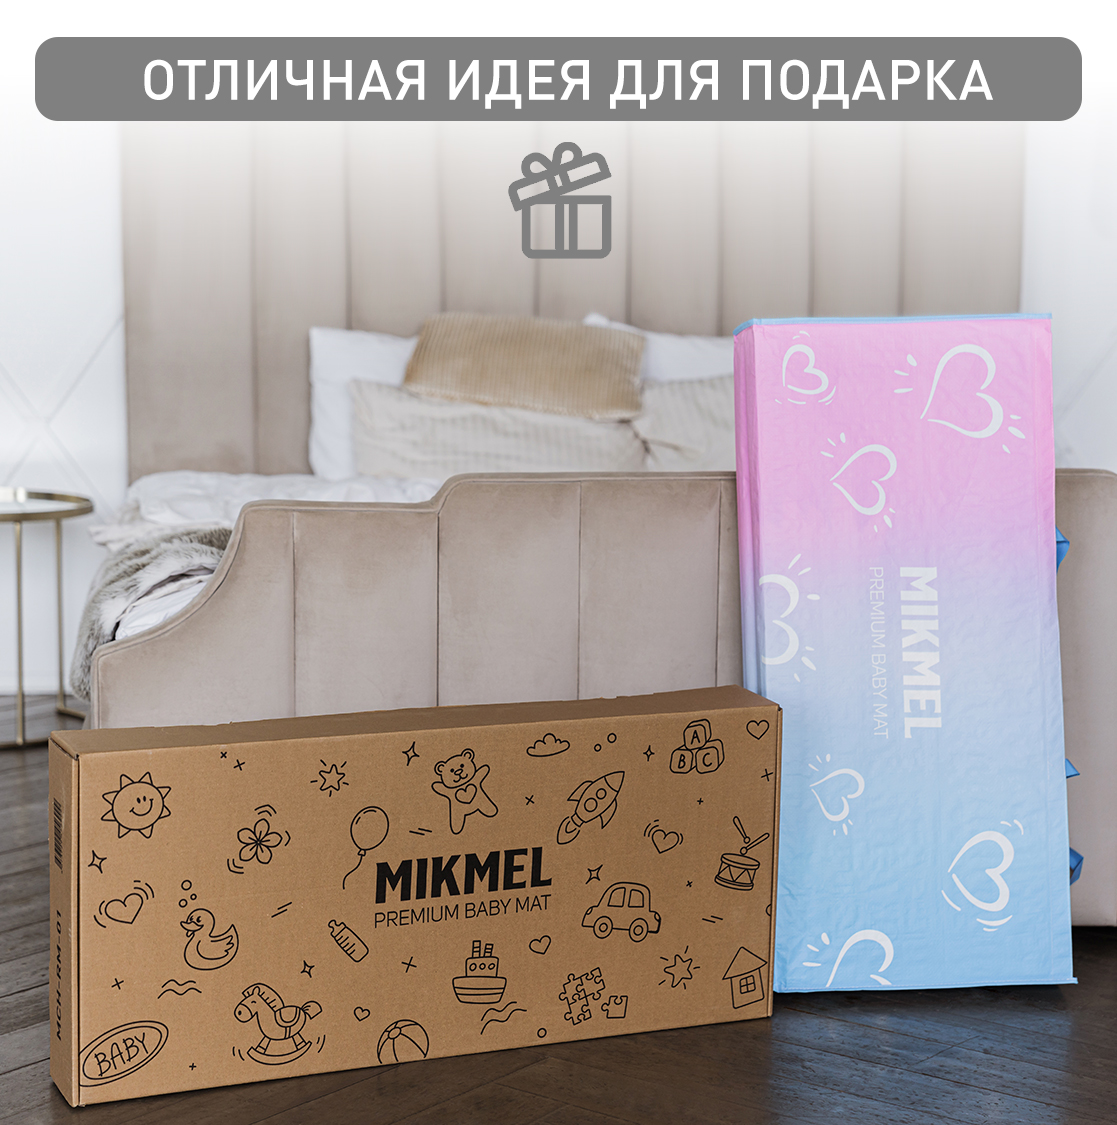 Детский коврик MIKMEL Premium складной игровой развивающий двусторонний для ползания 180х200 см Сафари Горы - фото 10